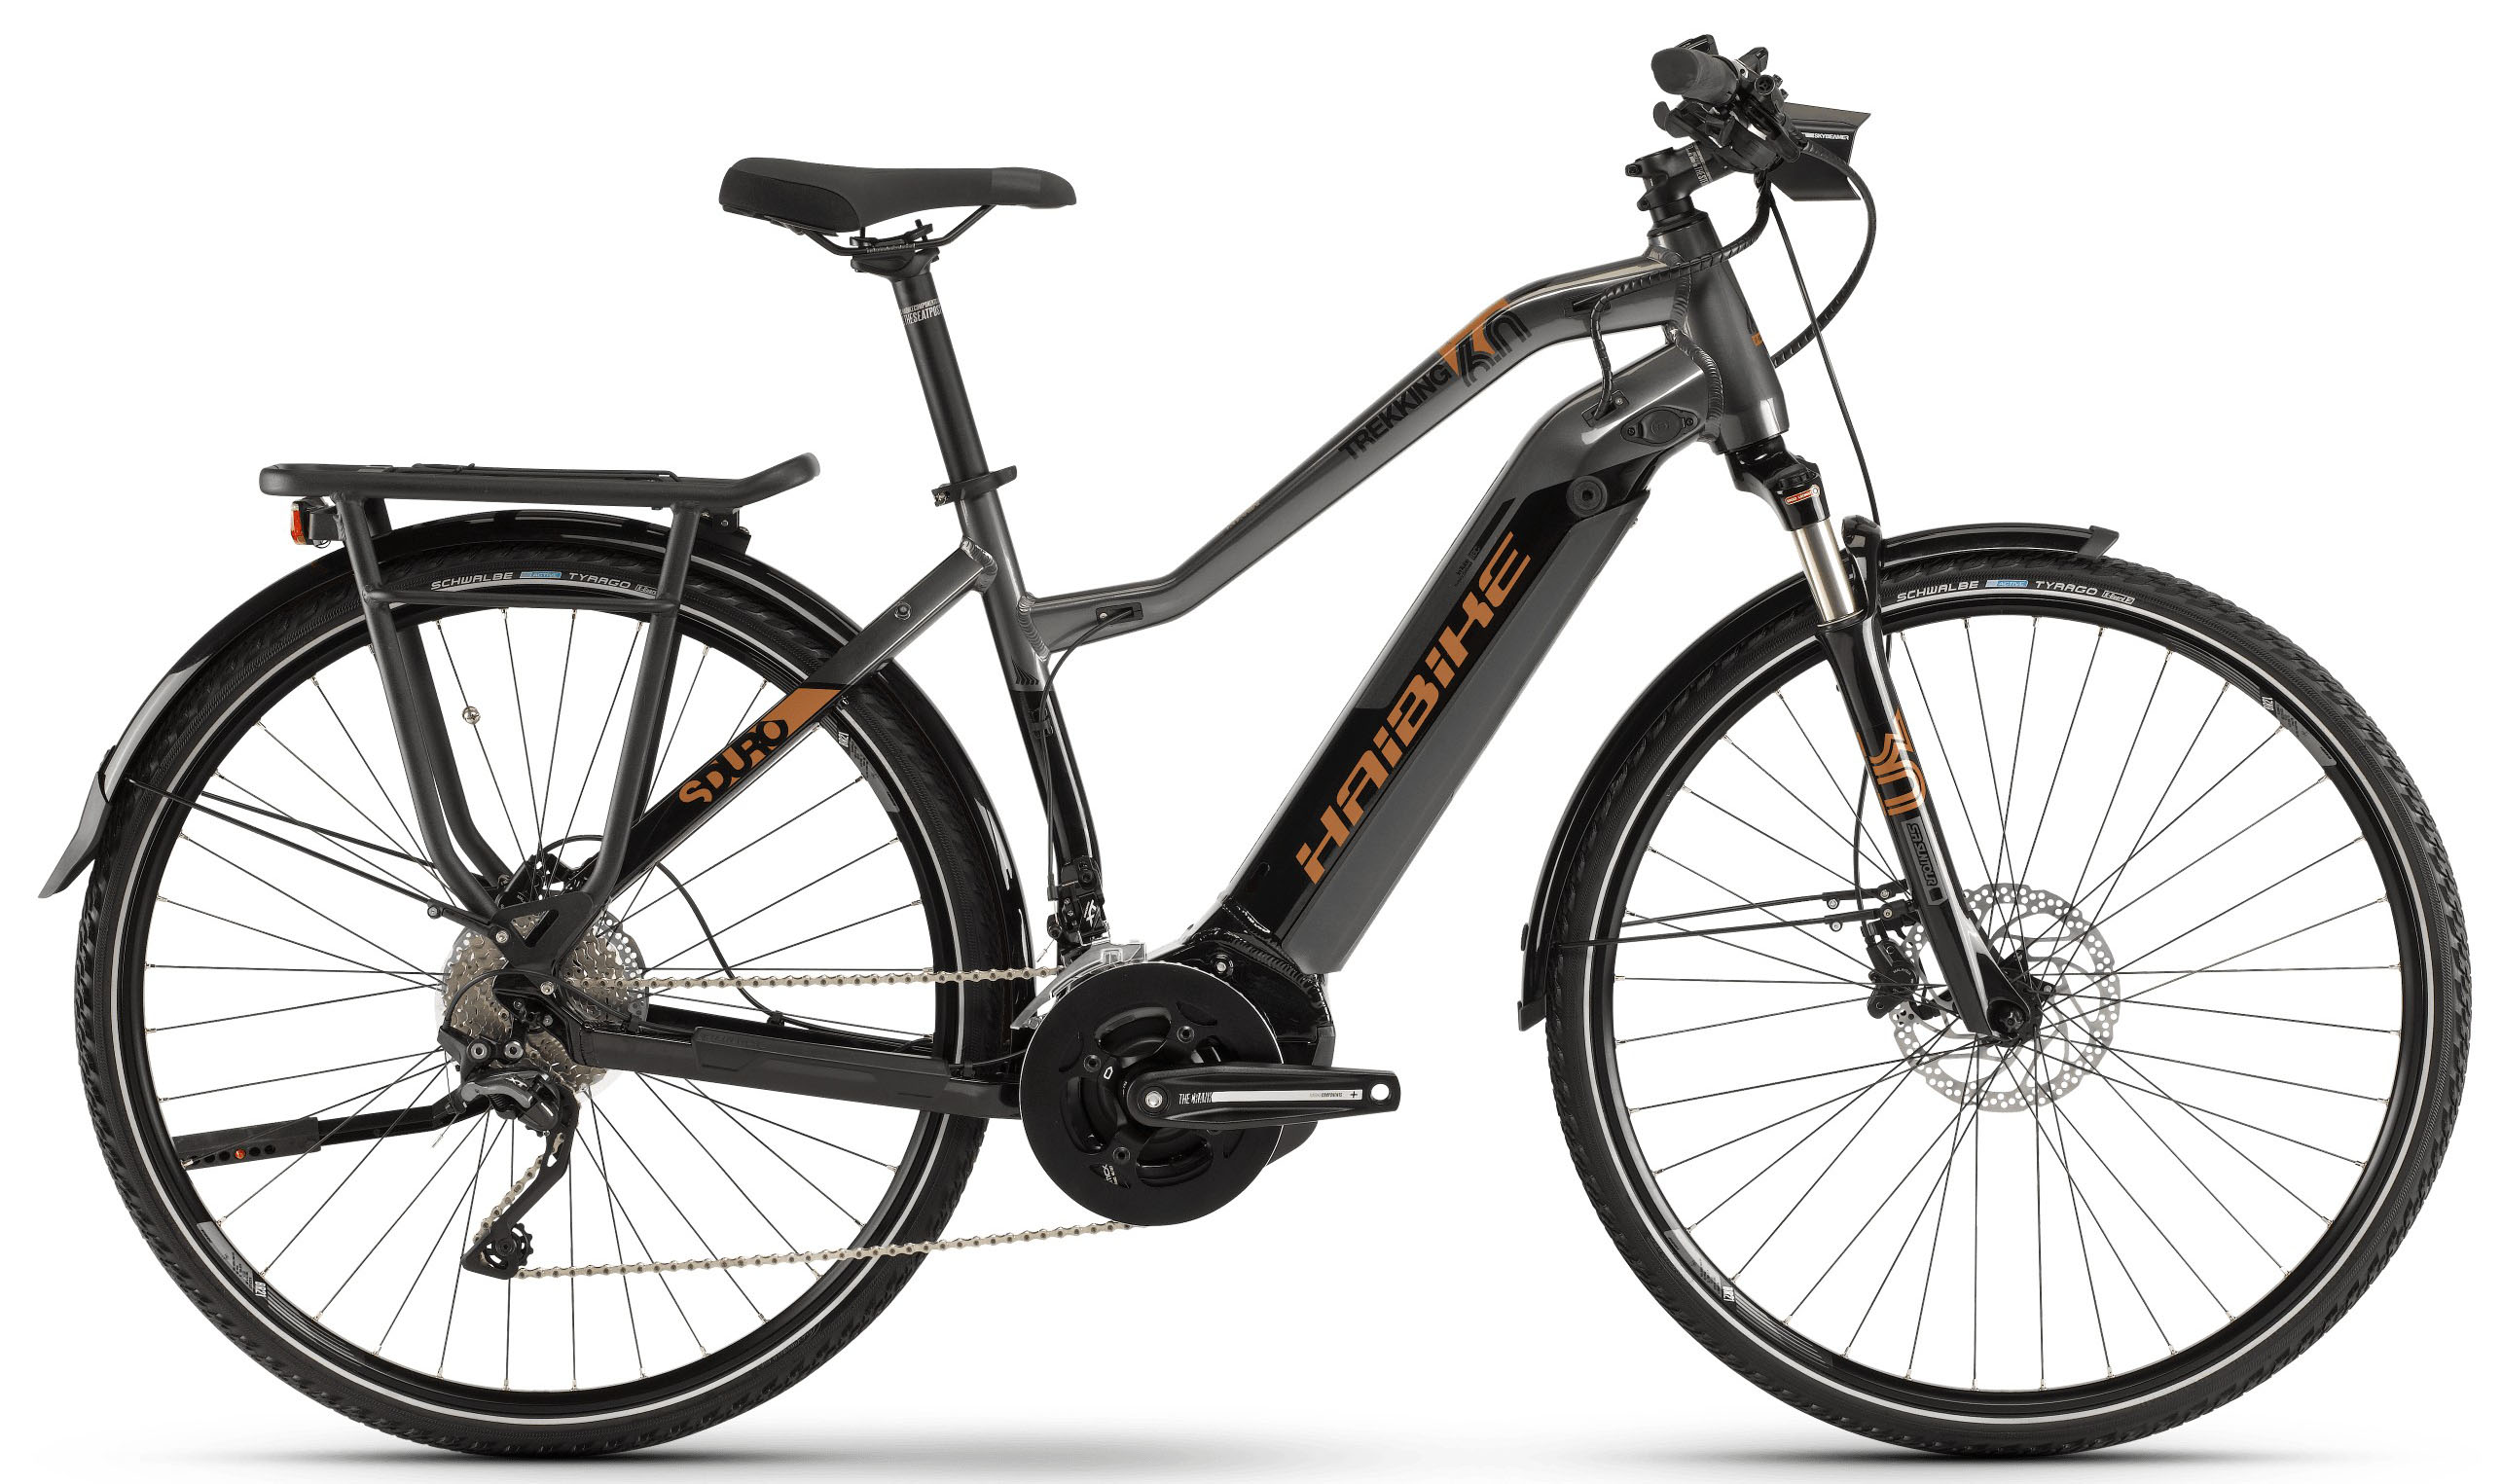  Отзывы о Трехколесный детский велосипед Haibike SDURO Trekking 6.0 Damen i500Wh 20-G XT 2019